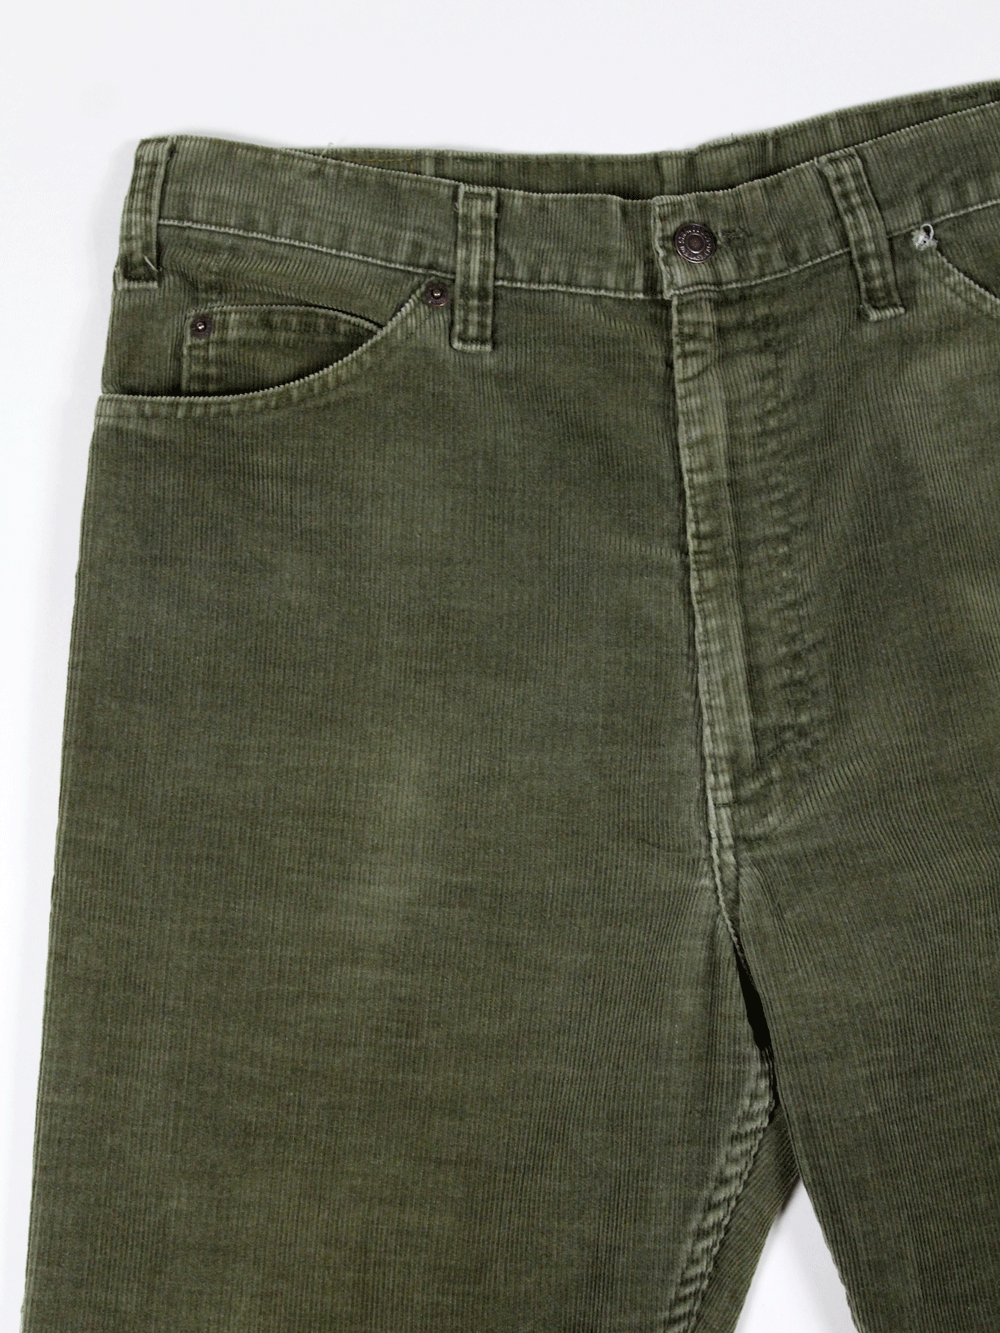 Levi's 517 Vintage Pant